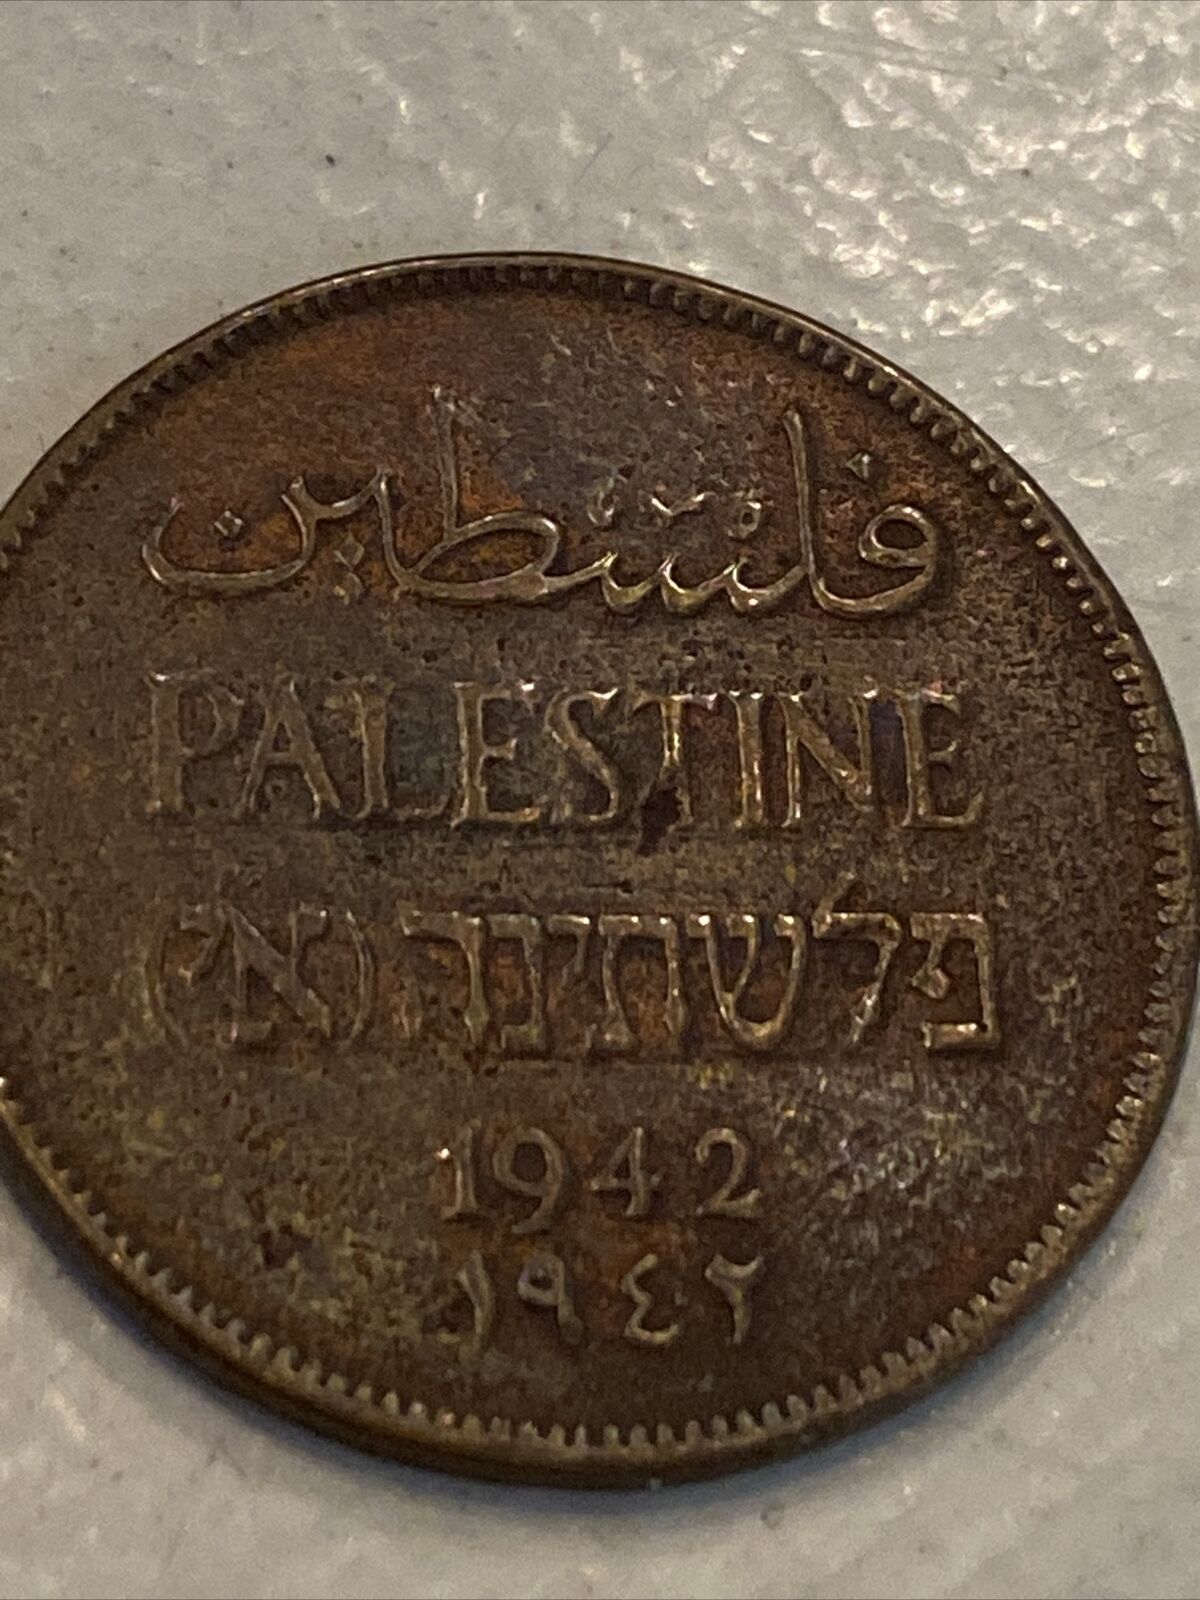  ANTIQUE PALESTINE Coin2  MILS 1942. ,MK10